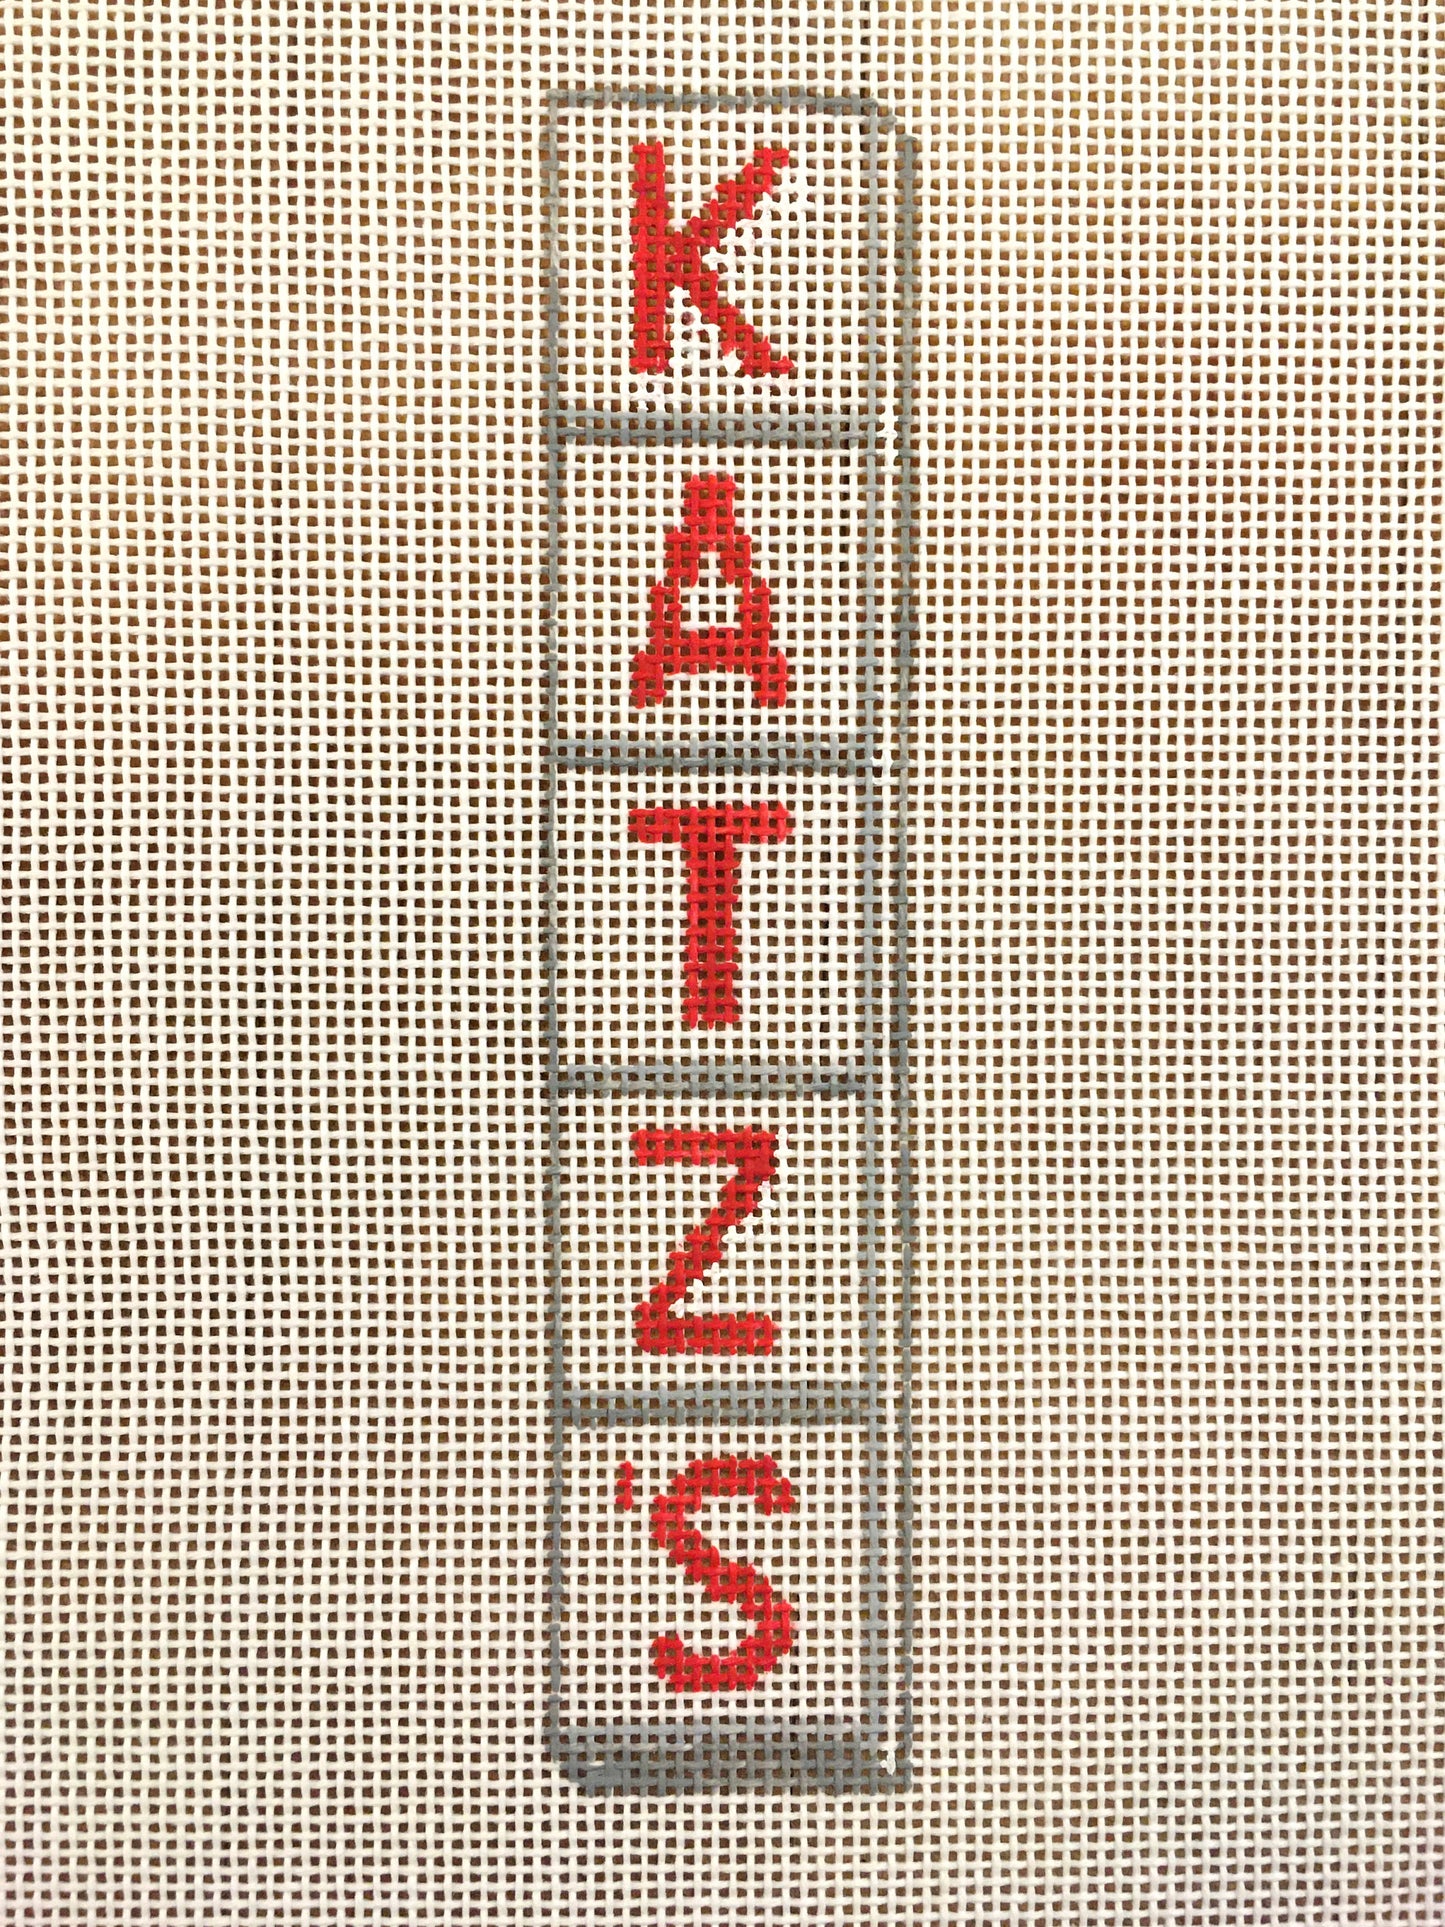 Katz's Deli Sign - NYC